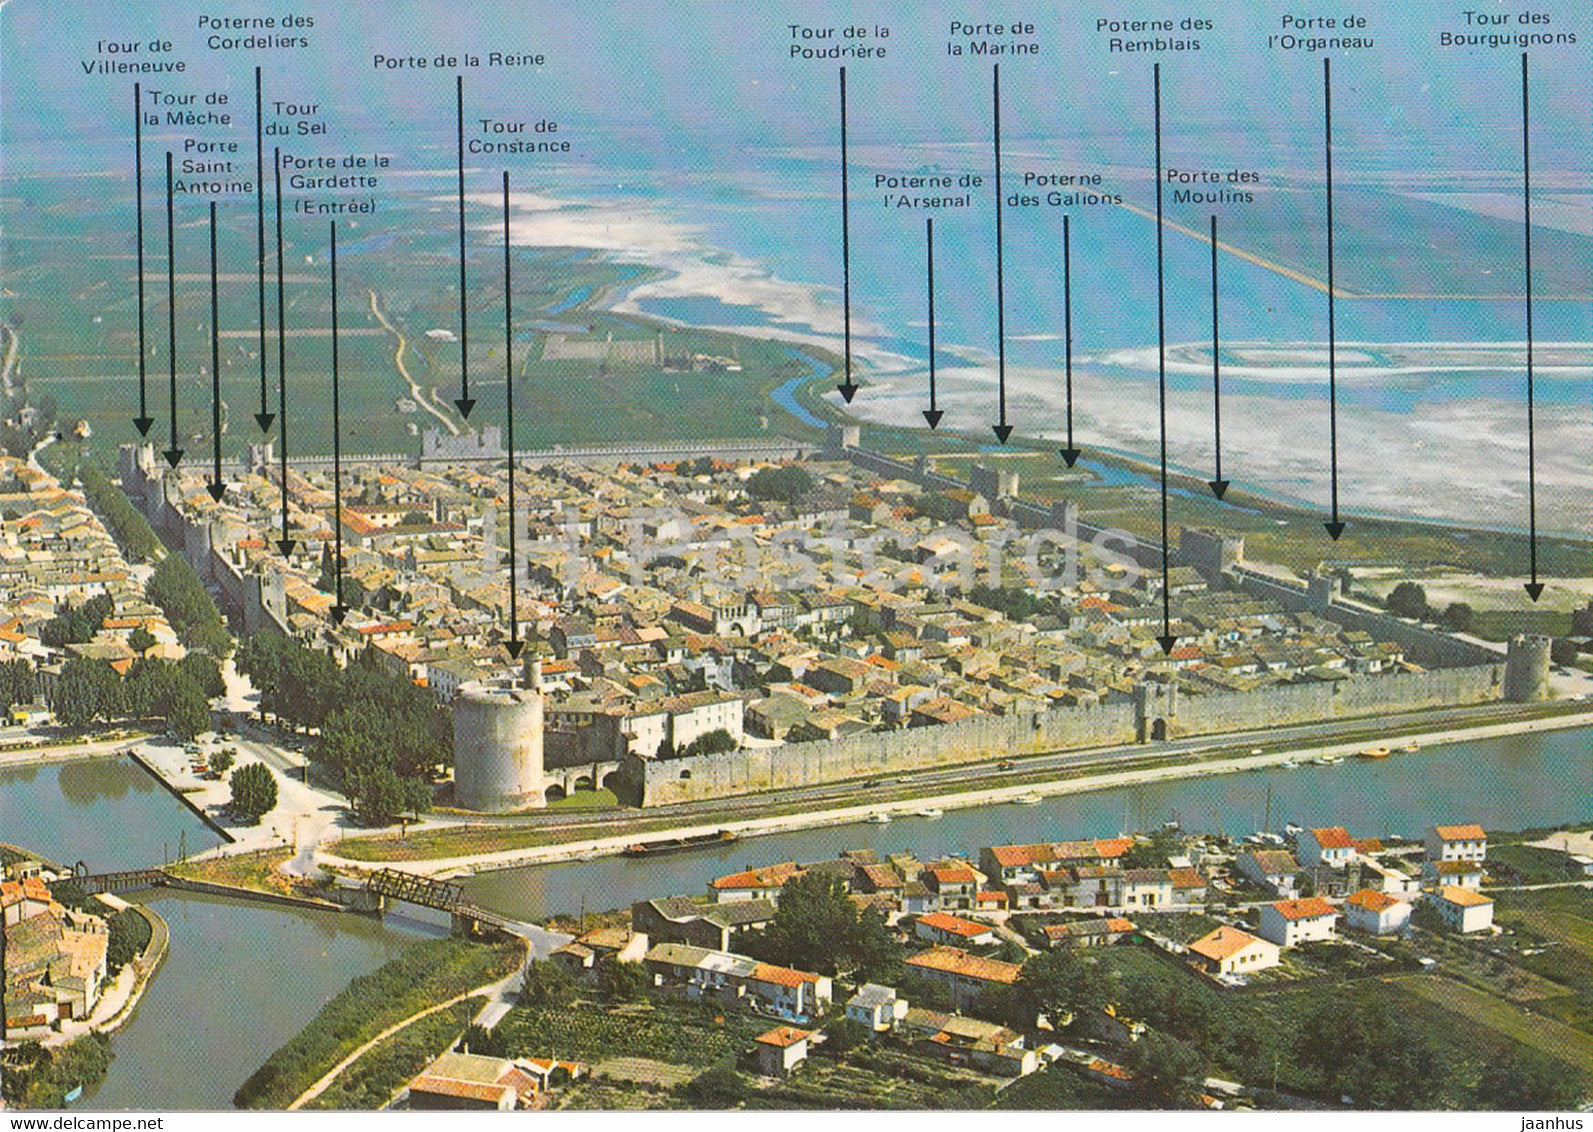 Aigues Mortes - La Ville du Roi Saint Louis - Vue Aerienne - 718 - France - unused - JH Postcards